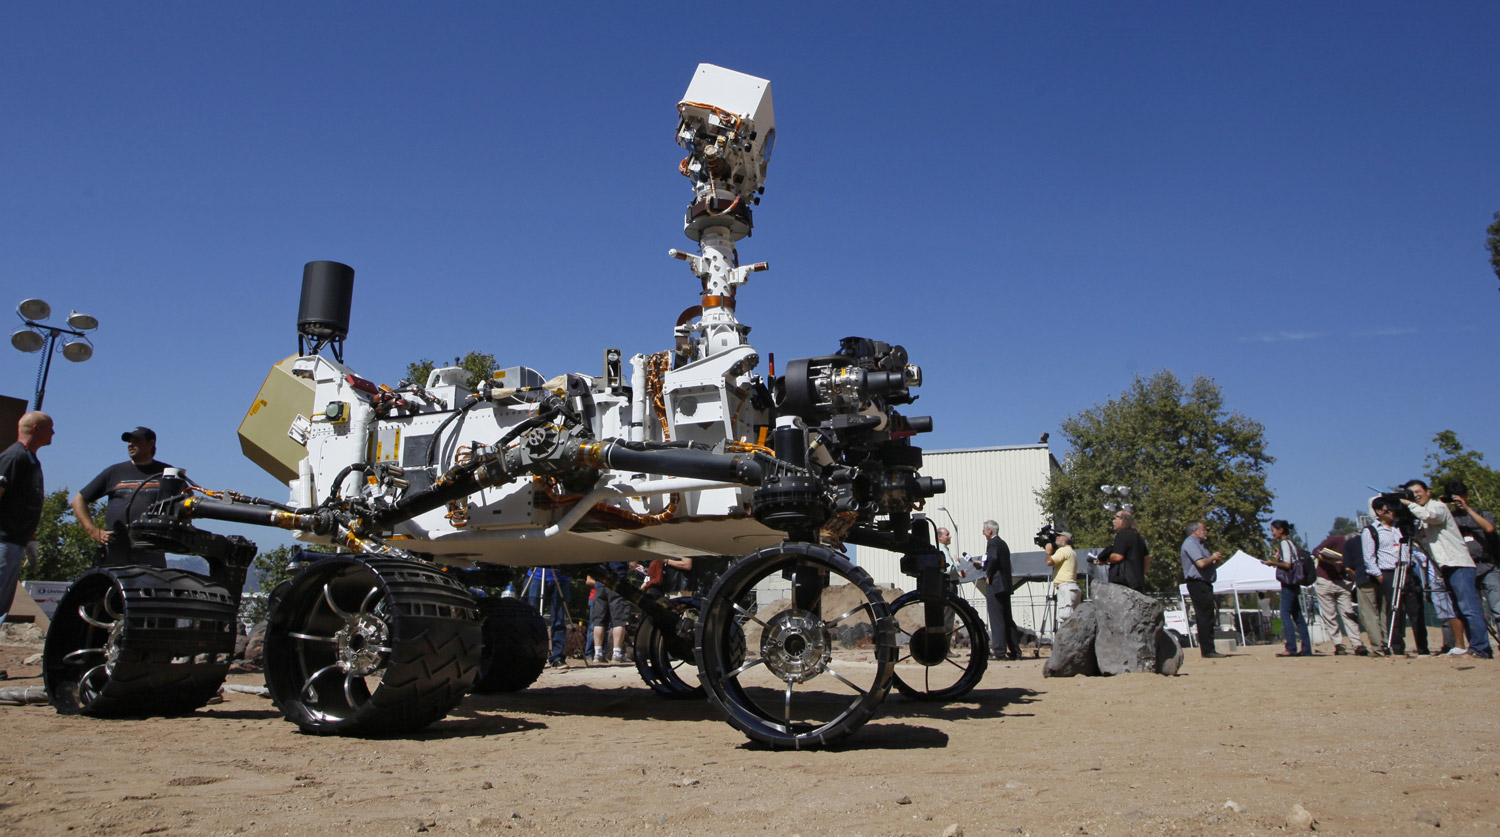 25 июля 2012 года. Марсоход Curiosity во время демонстрации СМИ